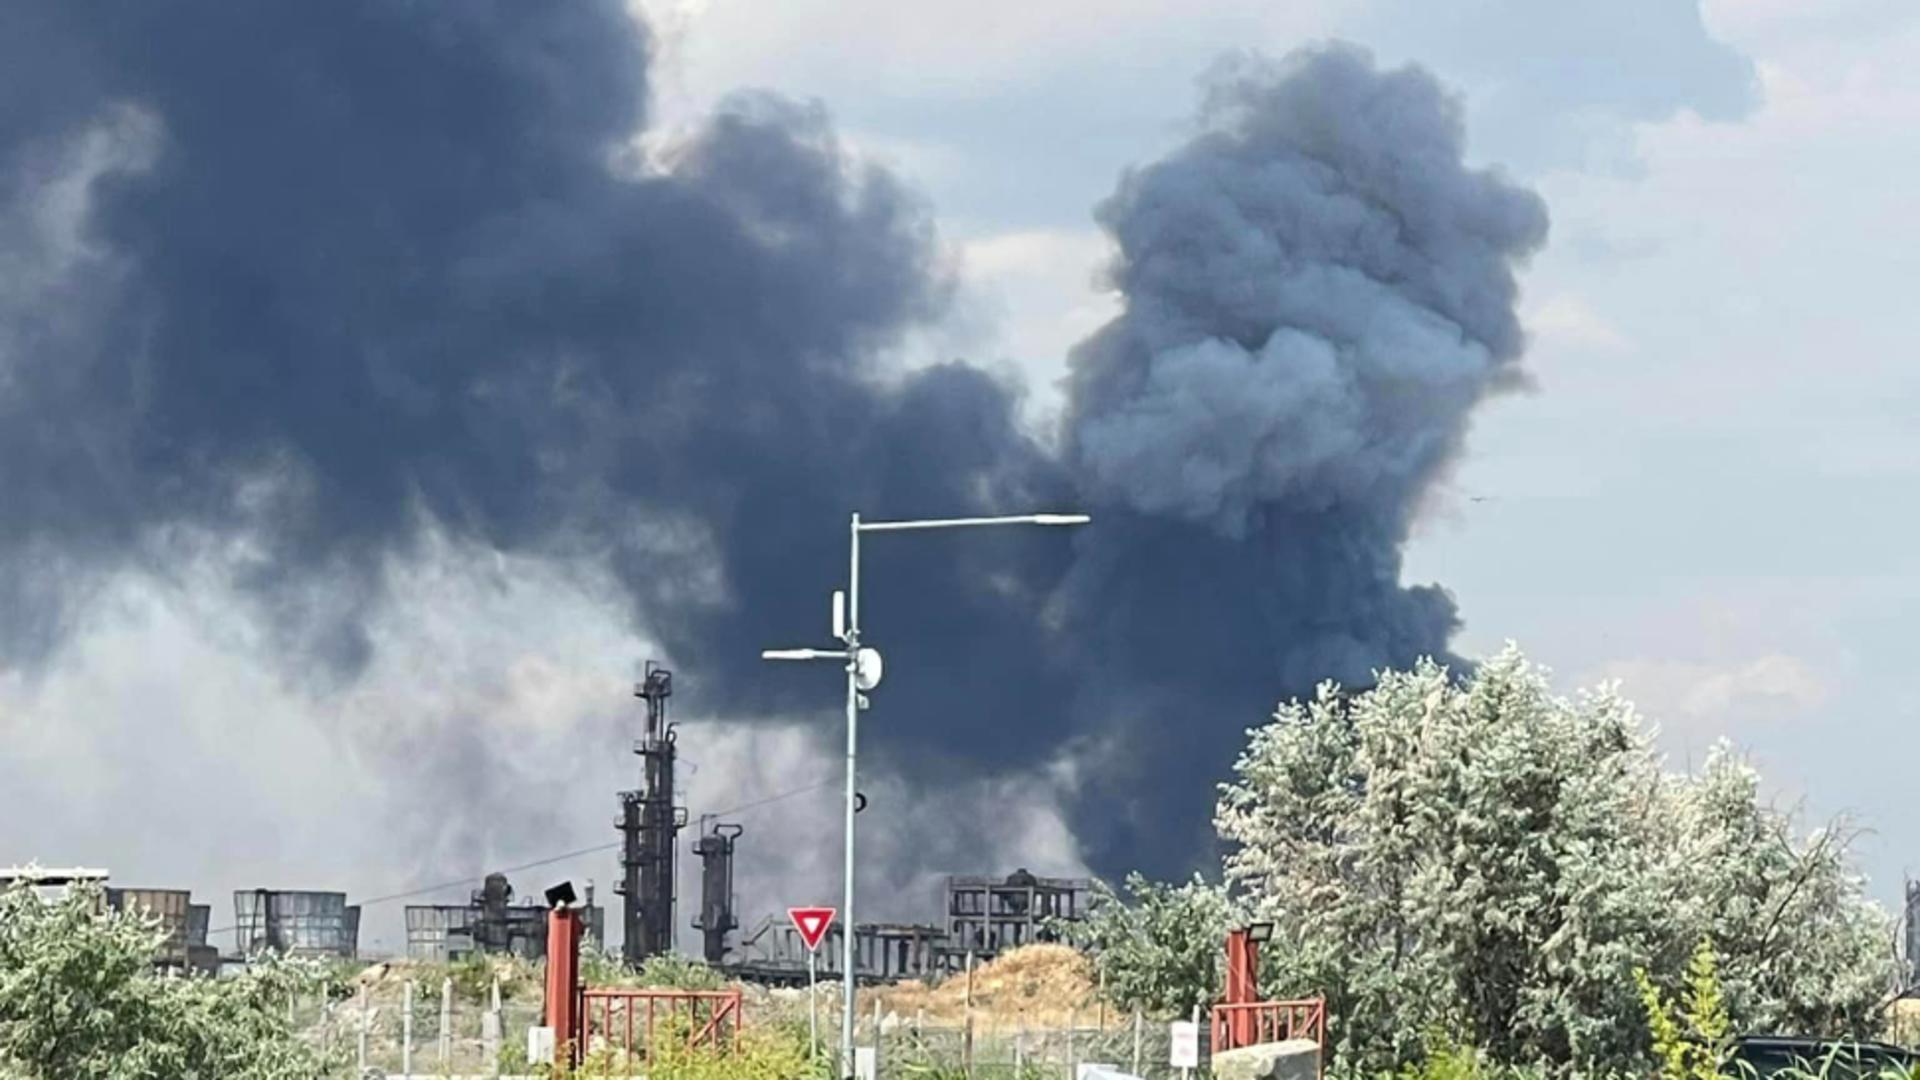 Explozie și incendiu la Petromidia – Fumul poate fi văzut de la mare distanță – VIDEO